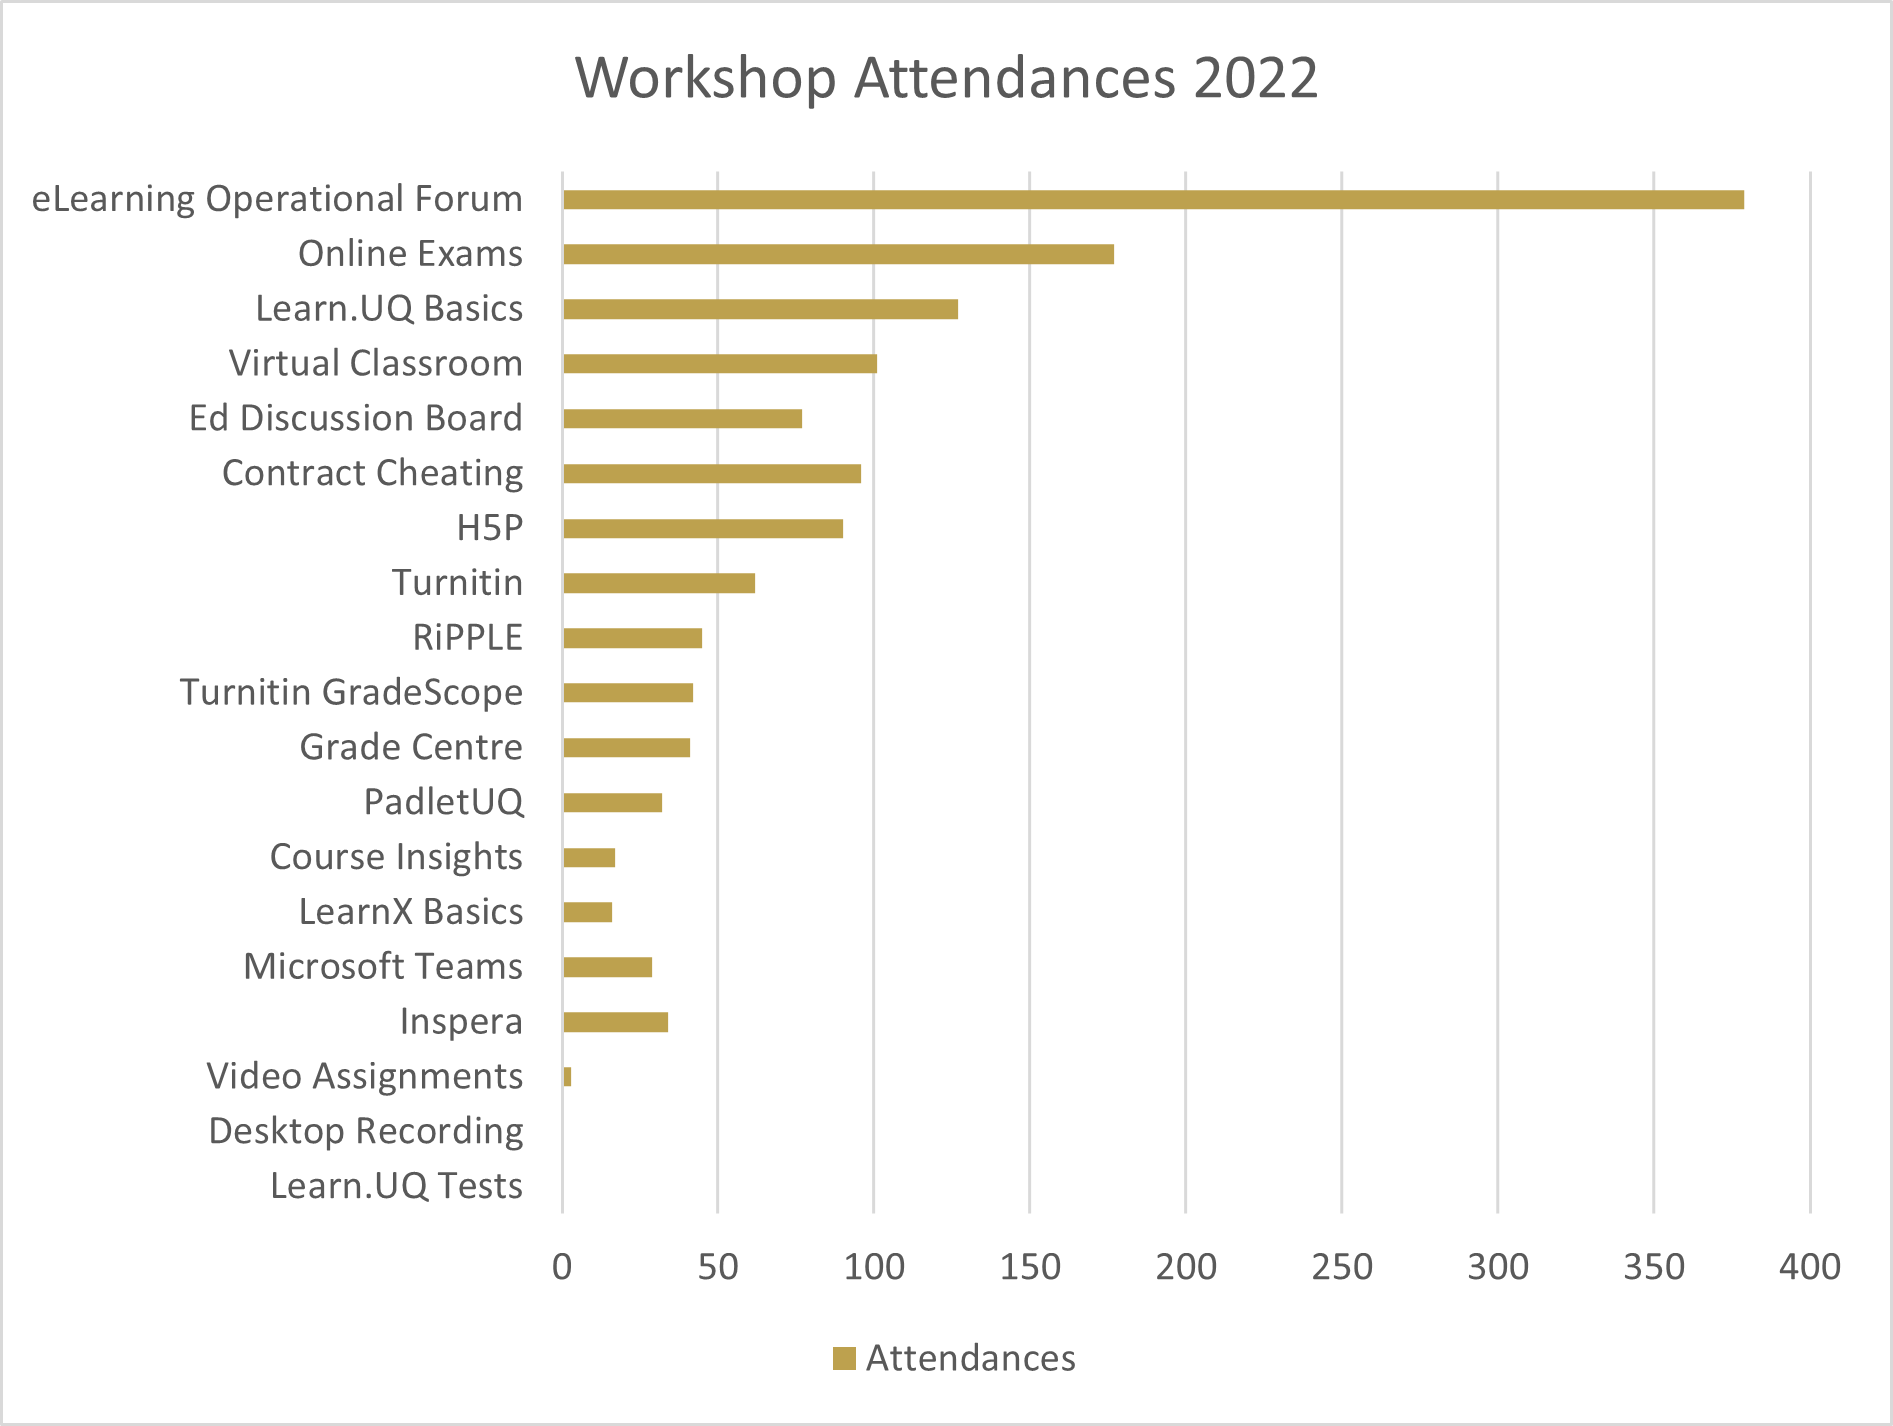 Sept 2022 workshops attended